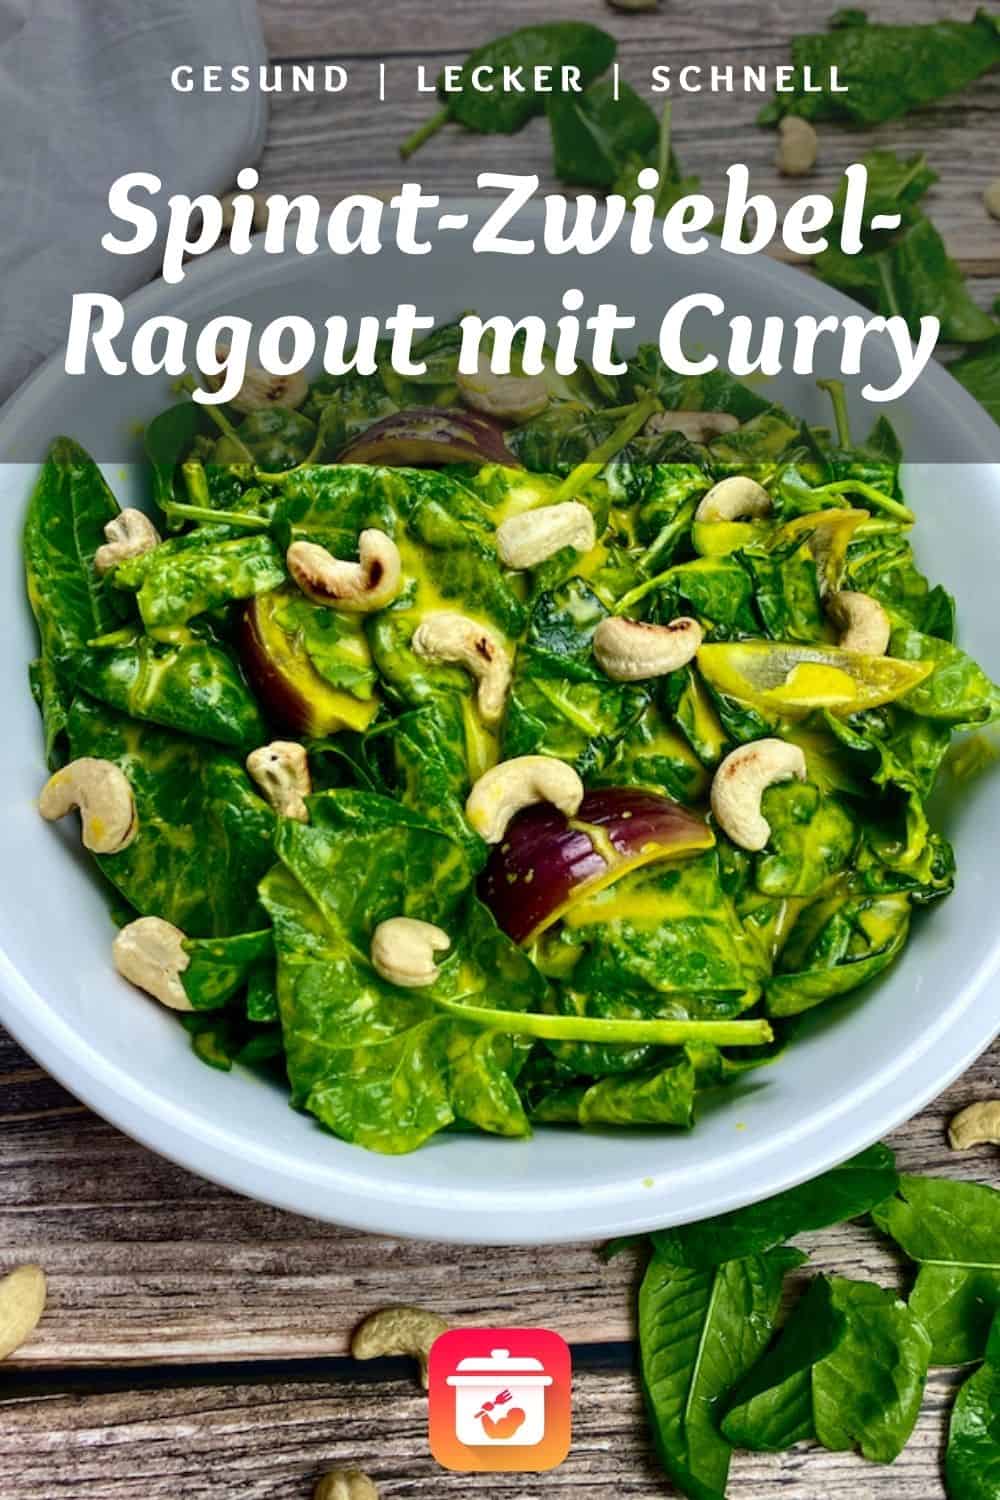 Spinat-Zwiebel-Ragout mit Curry  - Gesundes Spinat Rezept